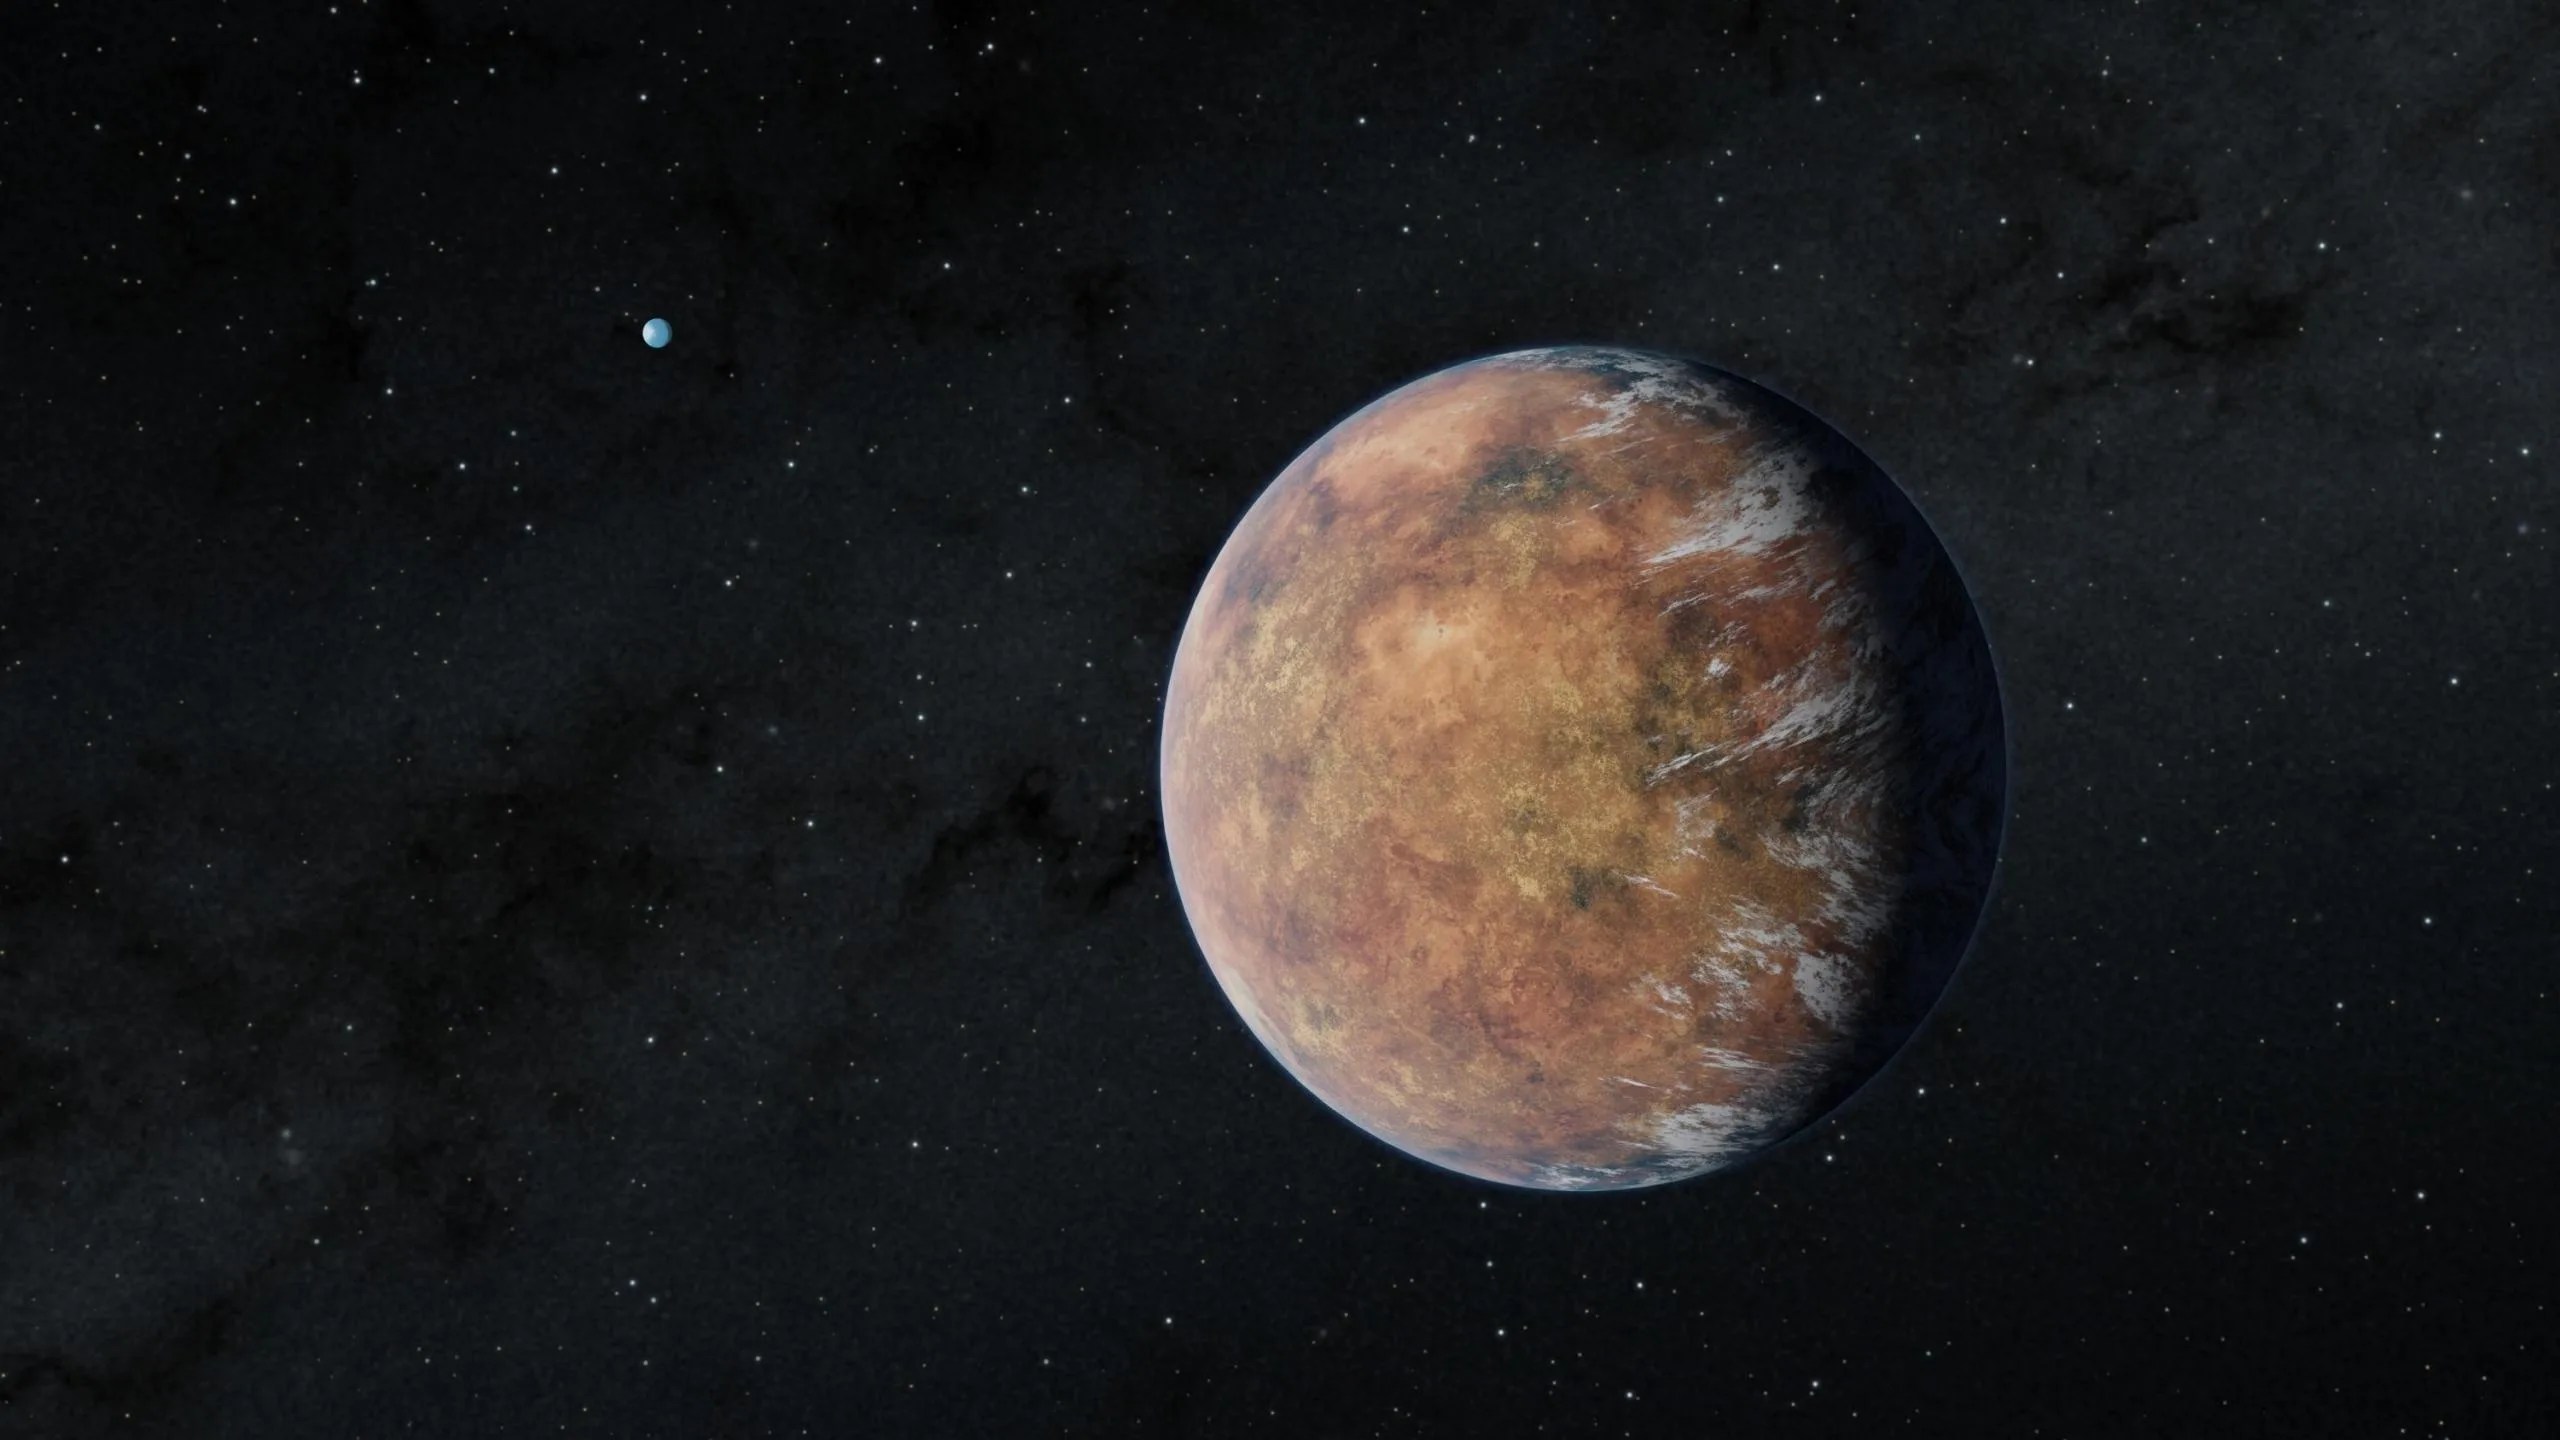 El planeta recién descubierto TOI 700 e, del tamaño de la Tierra, orbita dentro de la zona habitable de su estrella en esta ilustración. Su hermano TOI 700 d, también del tamaño de la Tierra, se puede ver en la distancia. Crédito: NASA/JPL-Caltech/Robert Hurt